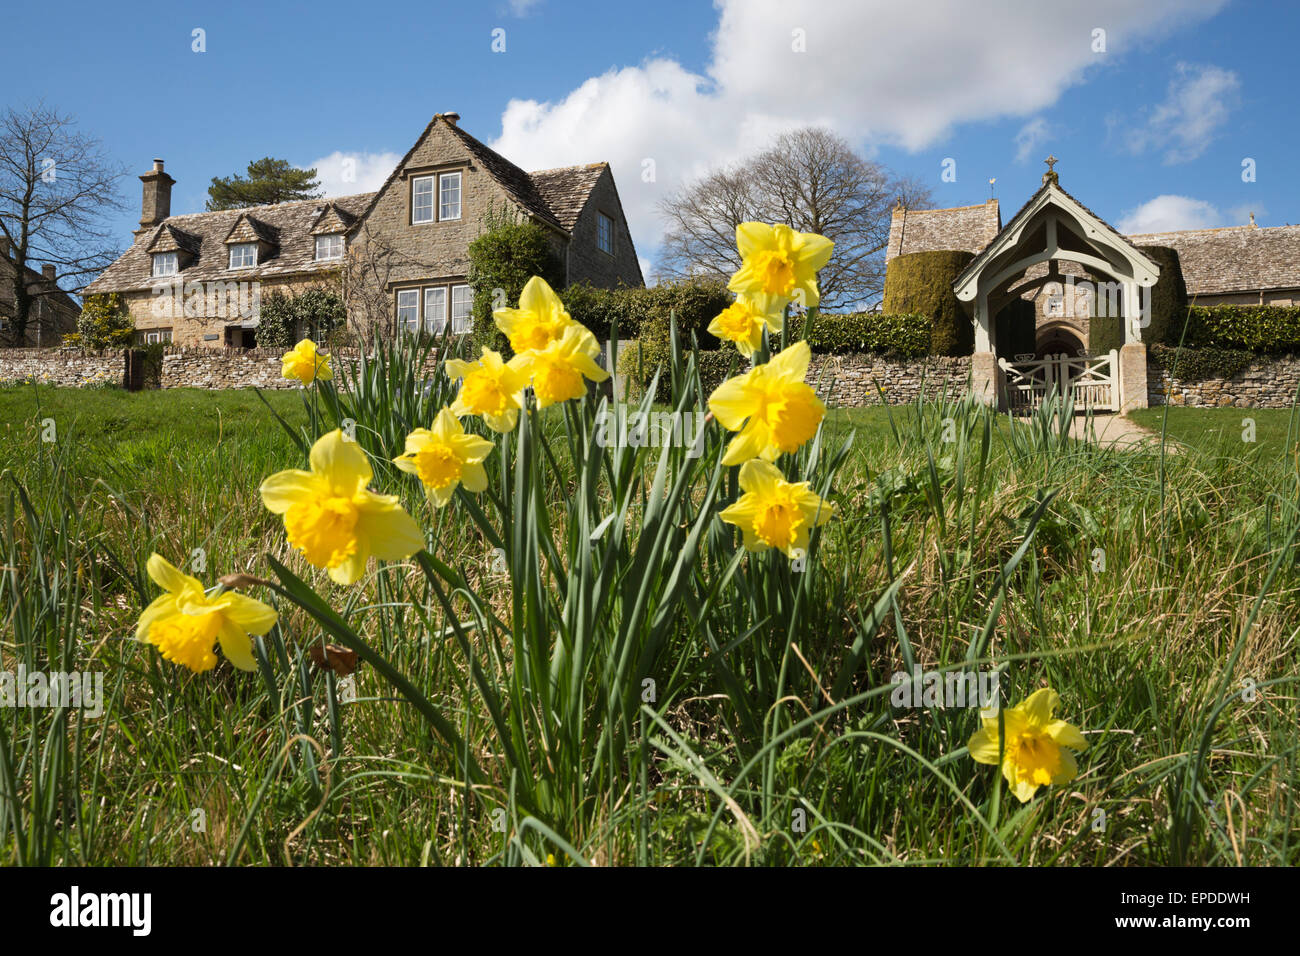 Les jonquilles à l'église St Pierre et Cotswold cottage, Duntisbourne Abbotts, Cirencester, Gloucestershire, England, UK Banque D'Images